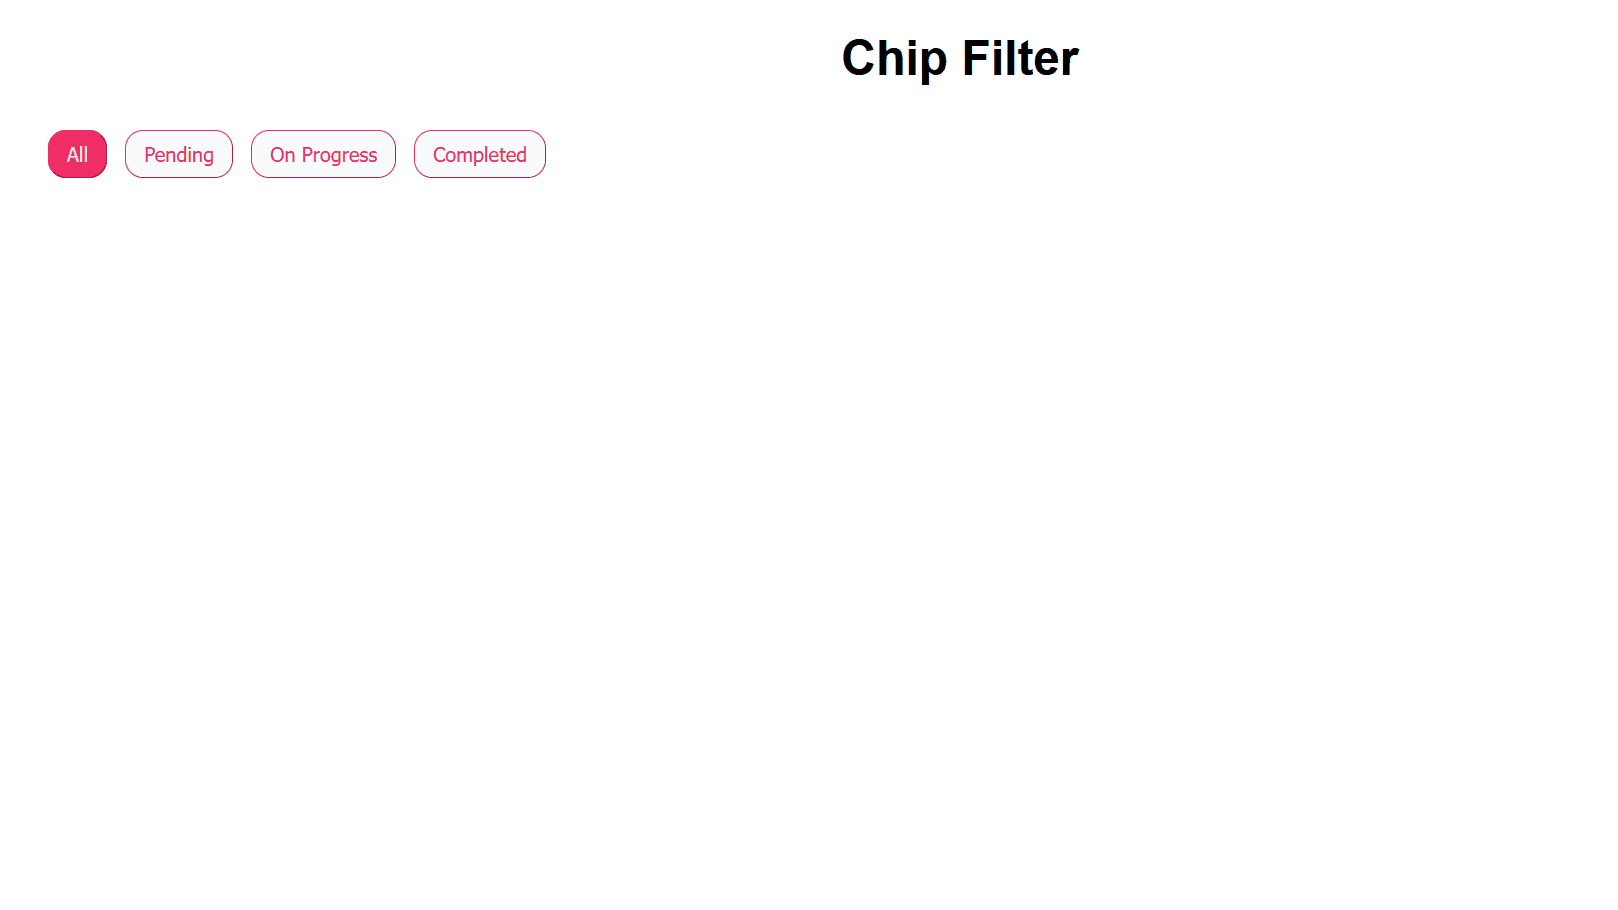 Adding filter chips {caption: Fig.2: Adding filter chips}